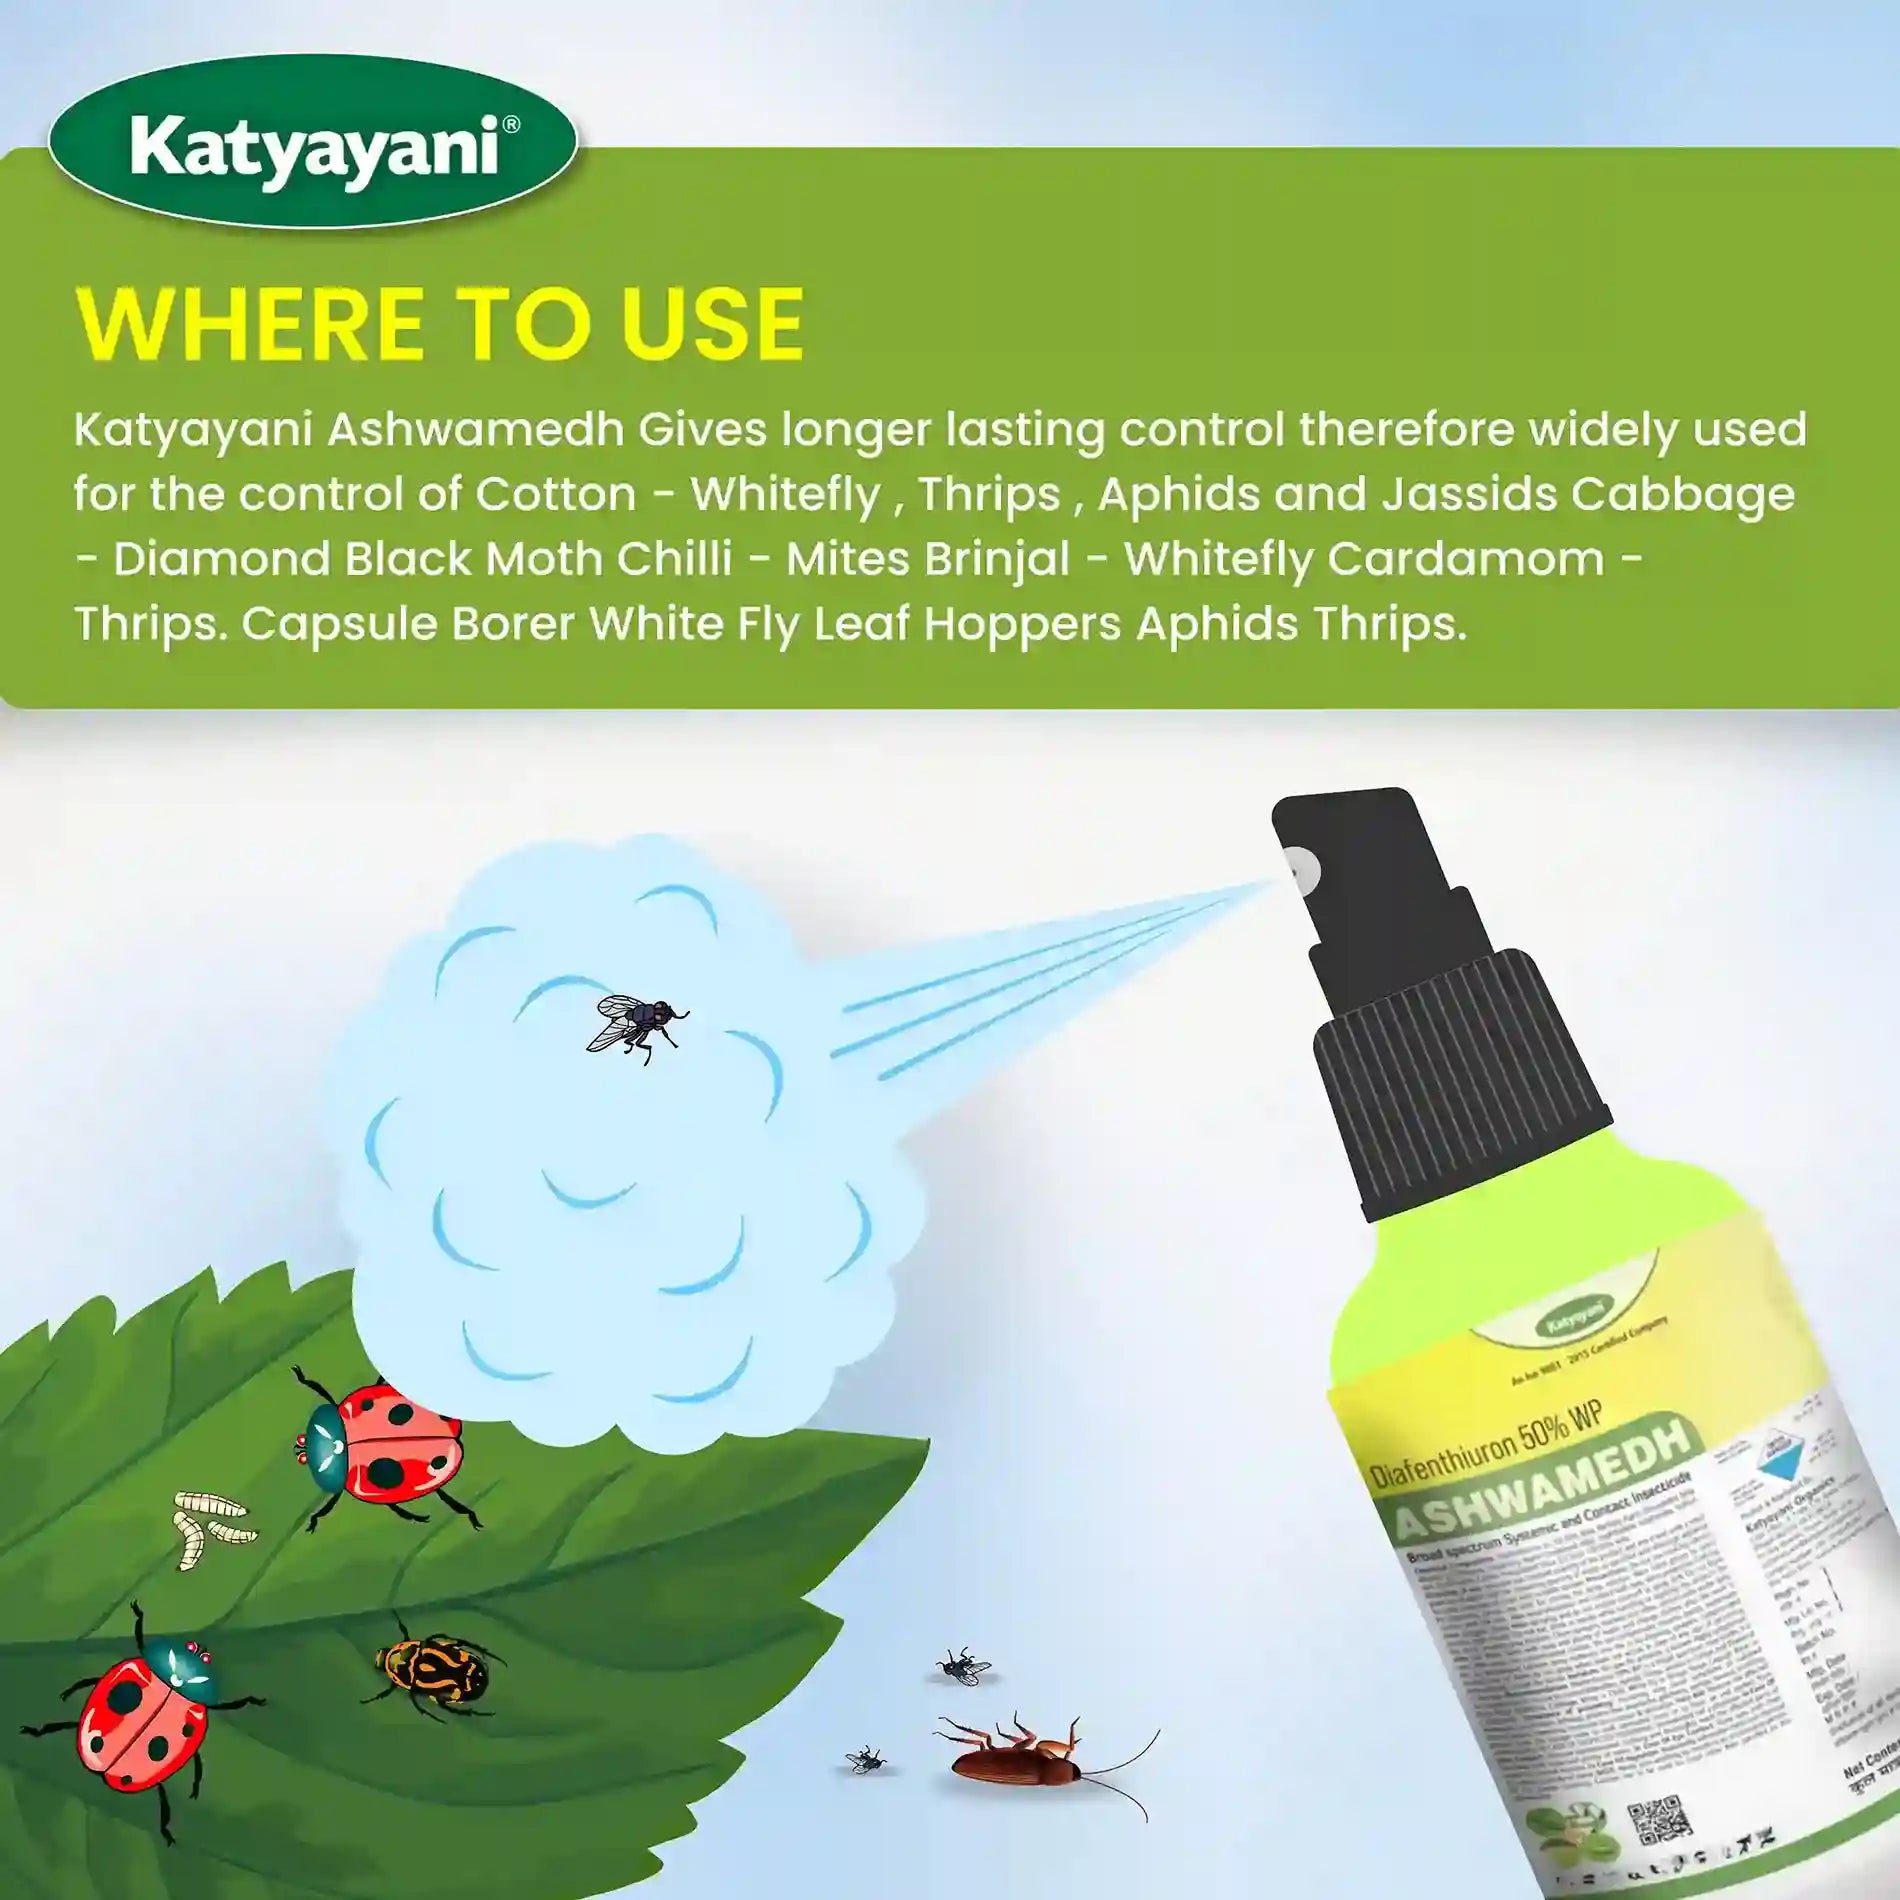 Katyayani ASHWAMEDH ( Diafenthiuron 50 % WP) Insecticide uses